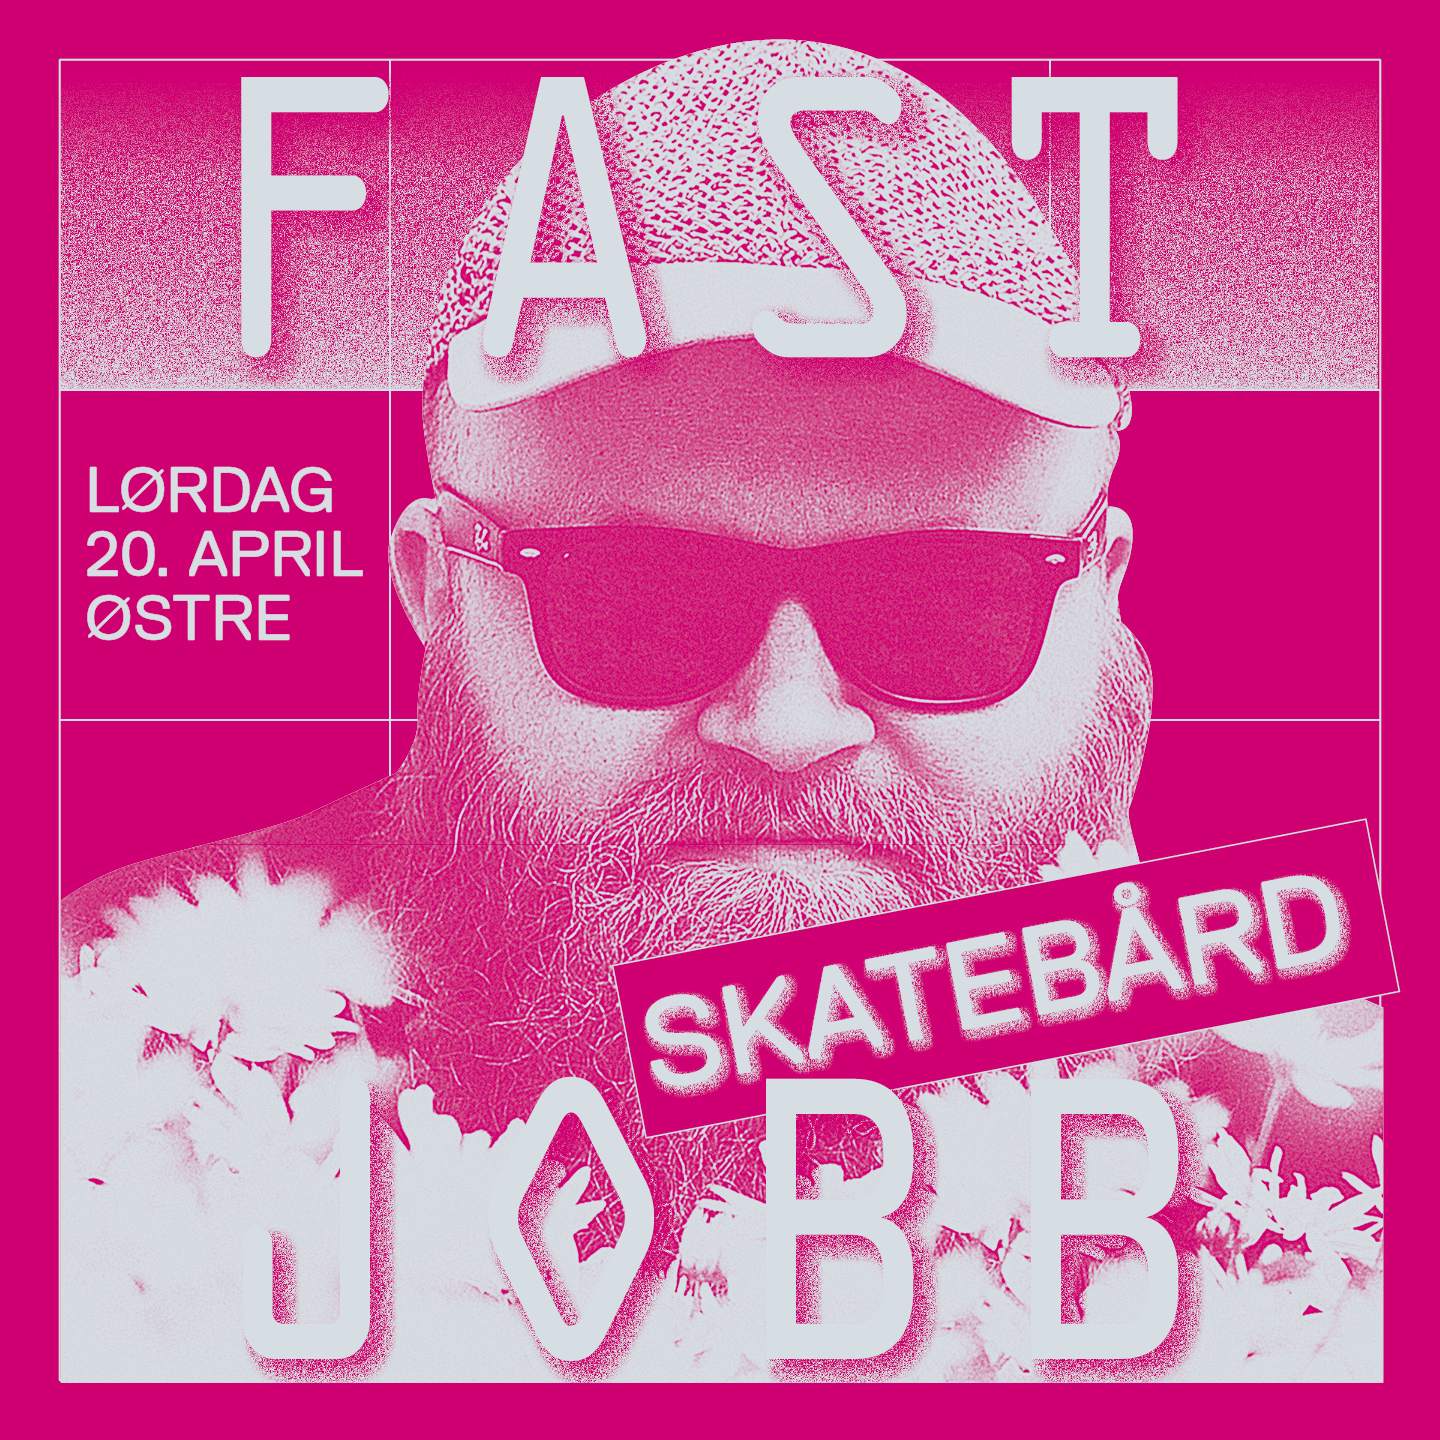 Fast jobb med Skatebård - フライヤー表